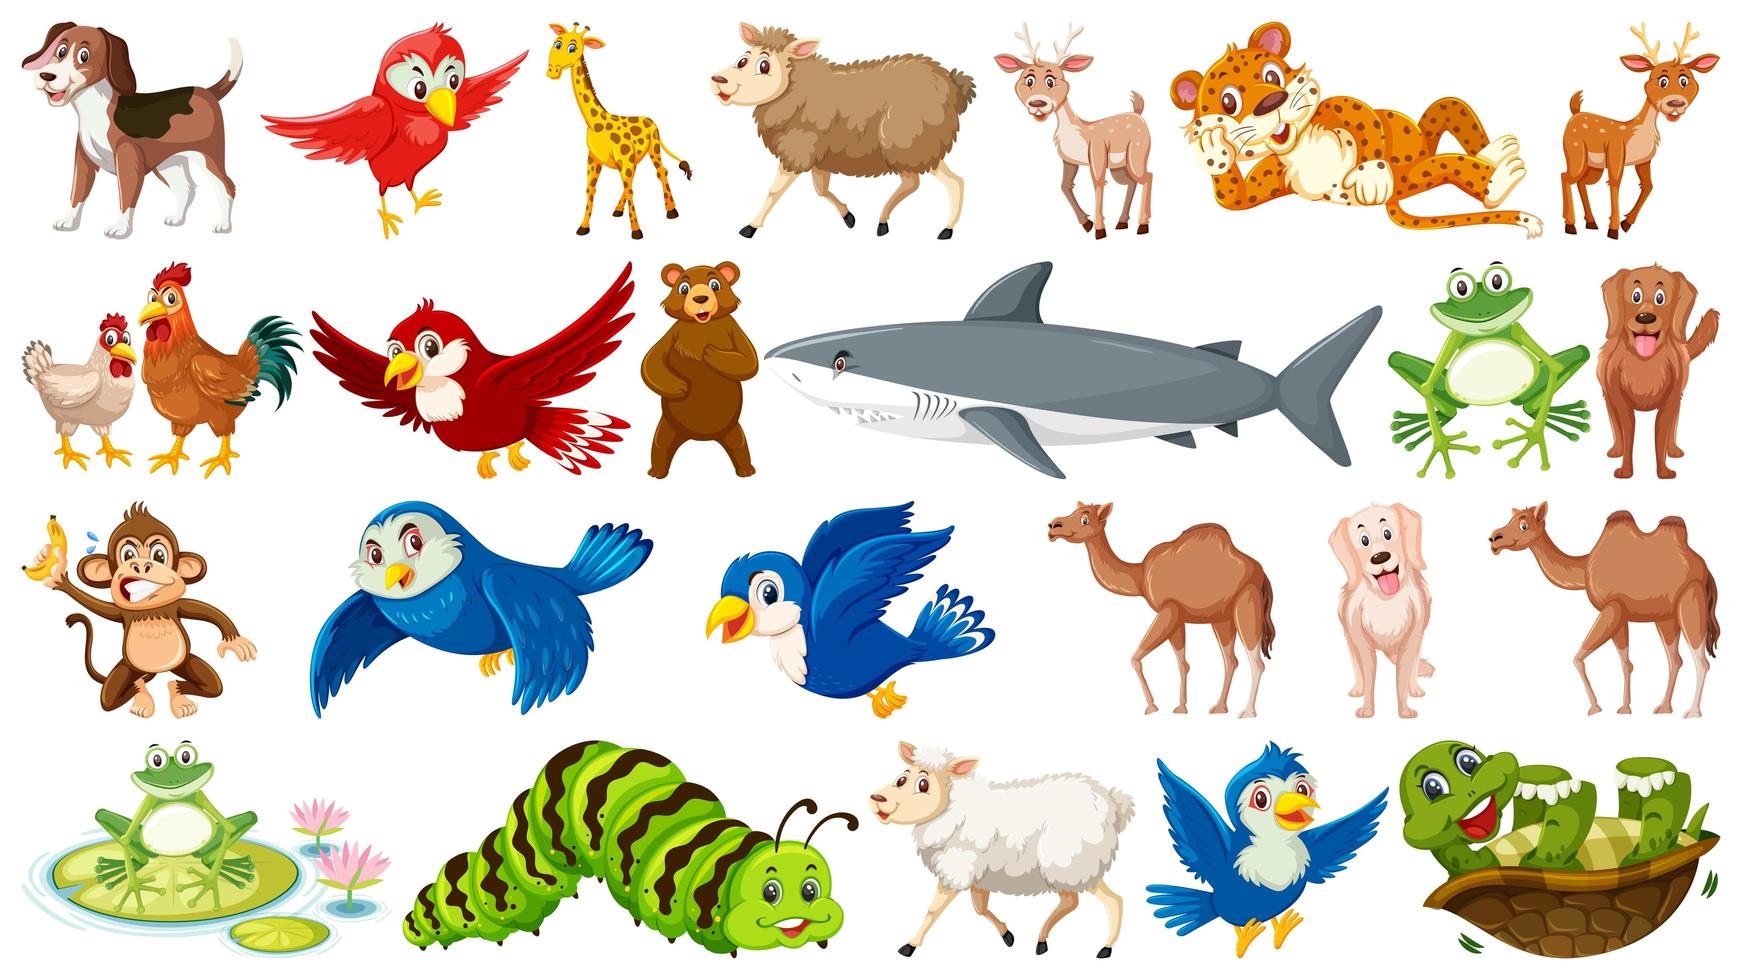 Los animales poseen características comunes, aquí explicamos algunas.